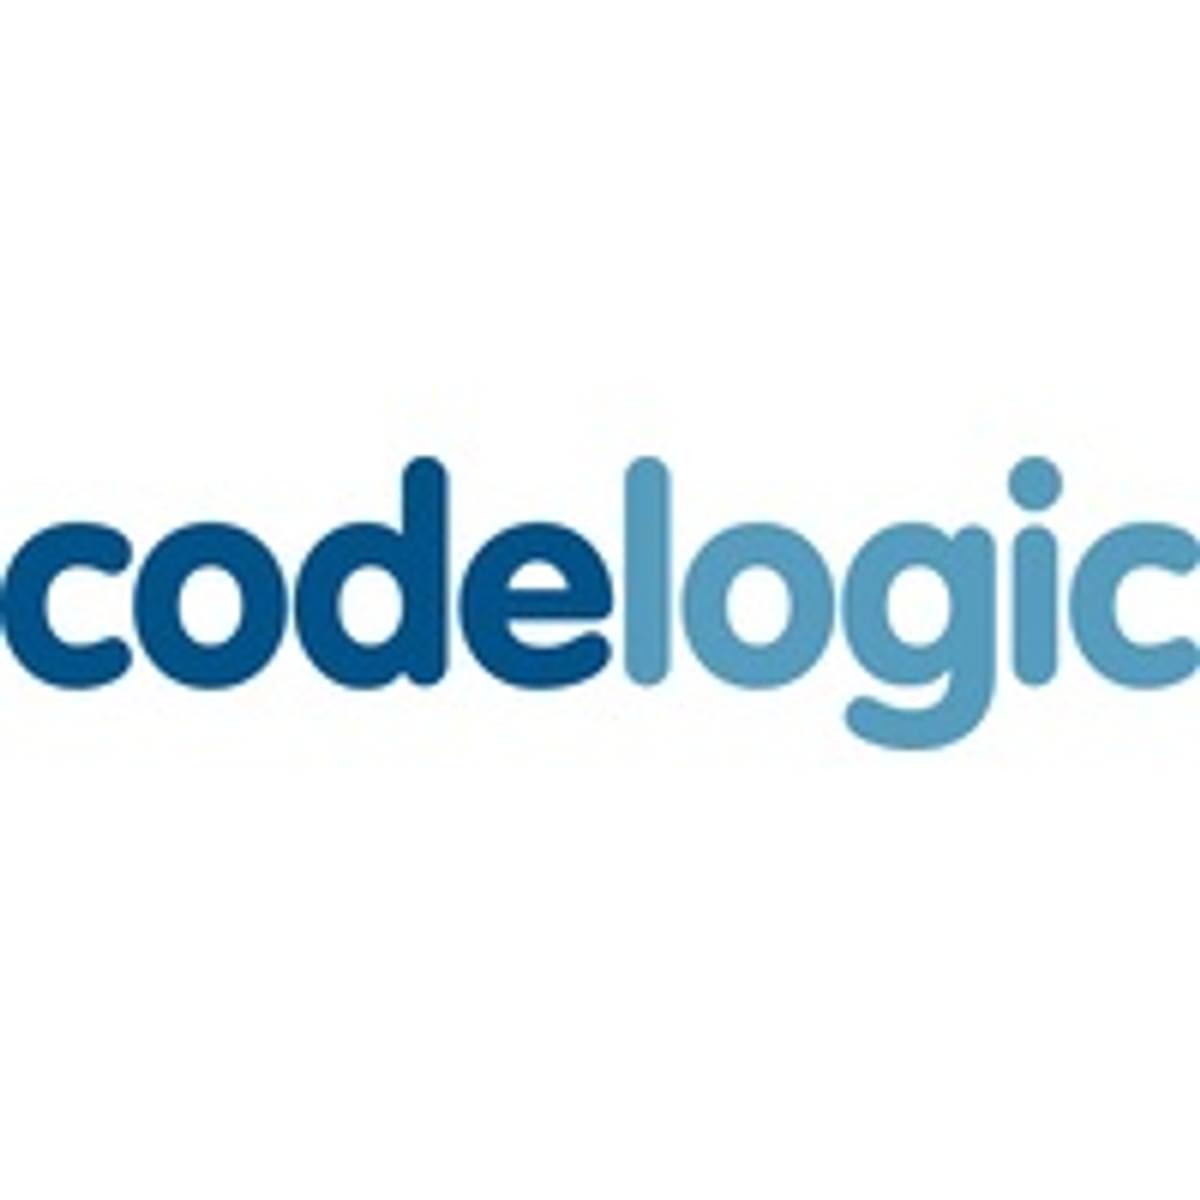 Codelogic koopt Duitse Enterprise Communications image